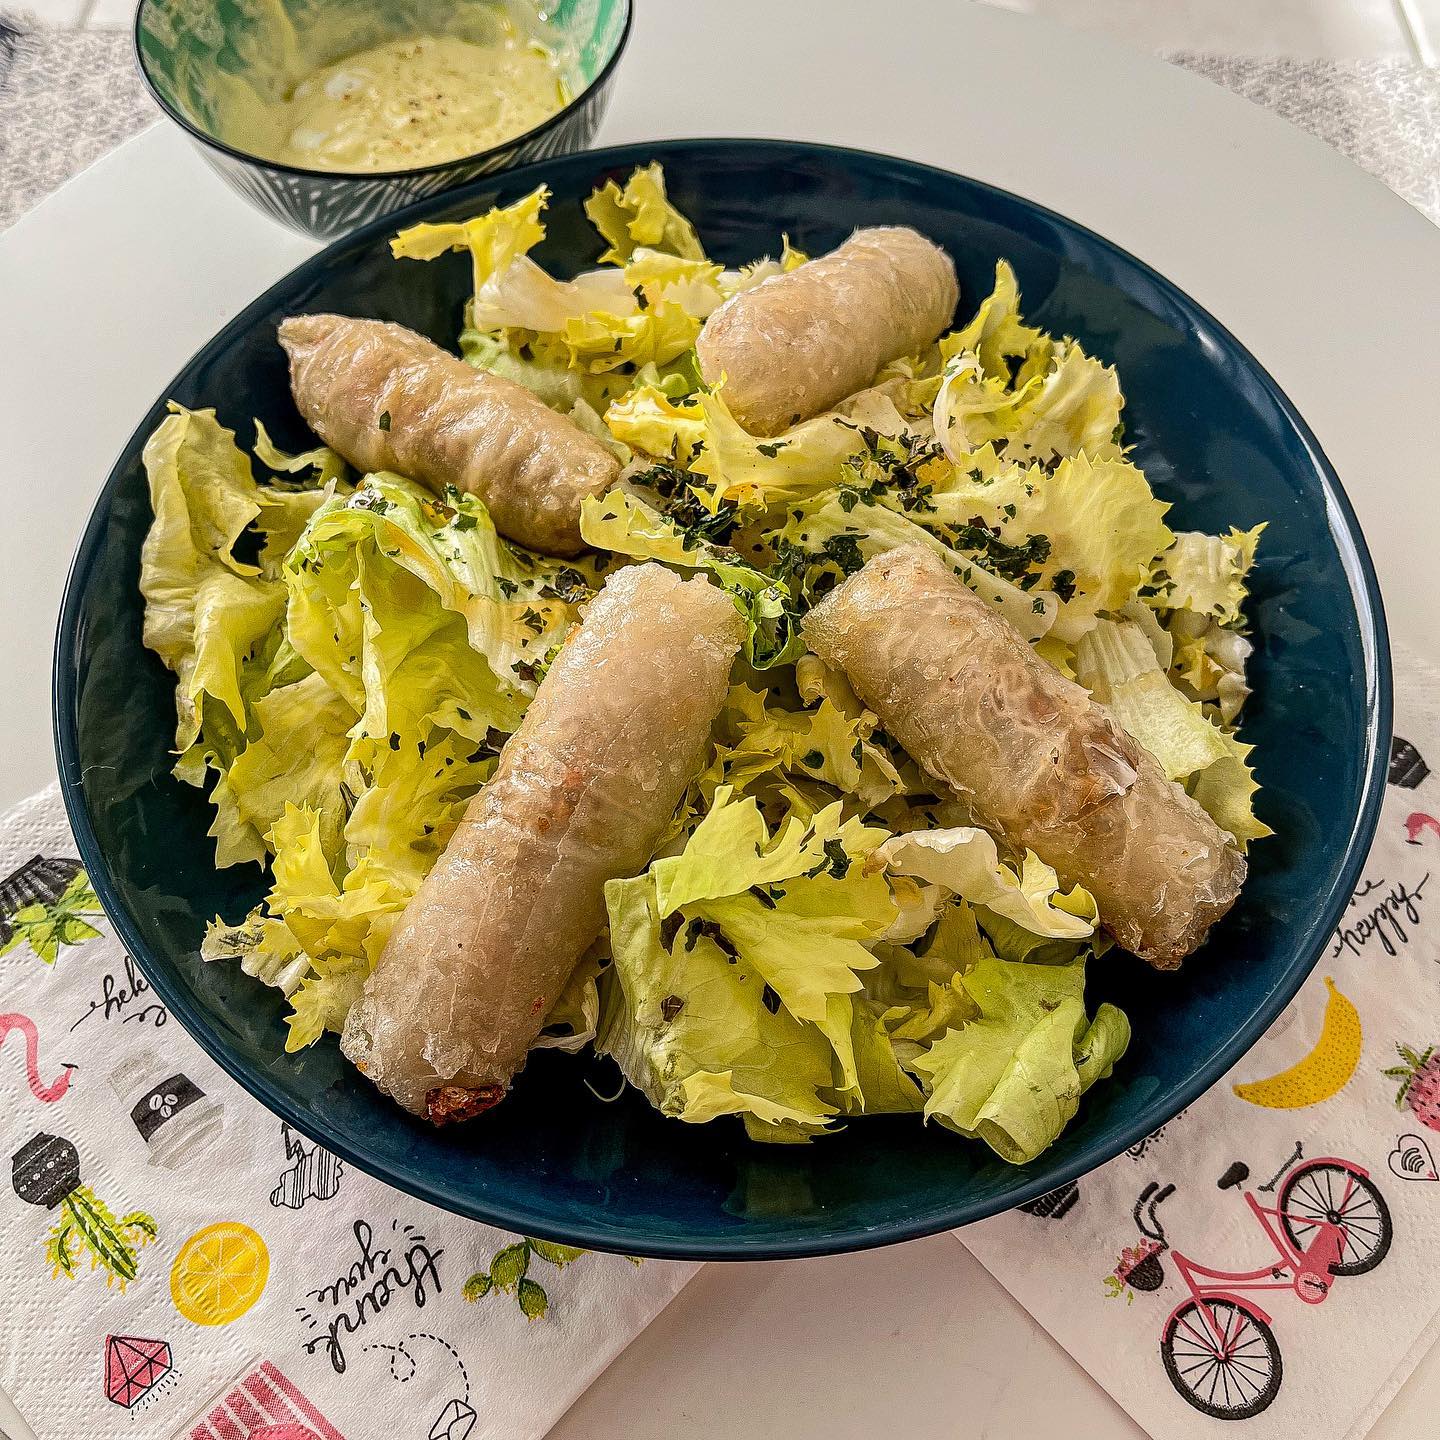 [𝙲𝚘𝚟𝚒𝚍 - 𝙳𝚎́𝚓 3 🥗]

On termine les nems de @nakatafrance avec une salade fraîche et une petite sauce césar 😊 bon lundi à tous 😘

————————————————————

#yummy #foodporn #foodlover #food #foodie #blogolyon #blogcuisine #lyon #igerslyon #pornfood #resto #restolyon  #foodporn #nakata #cuisinemoi #nems #salade #saladecesar